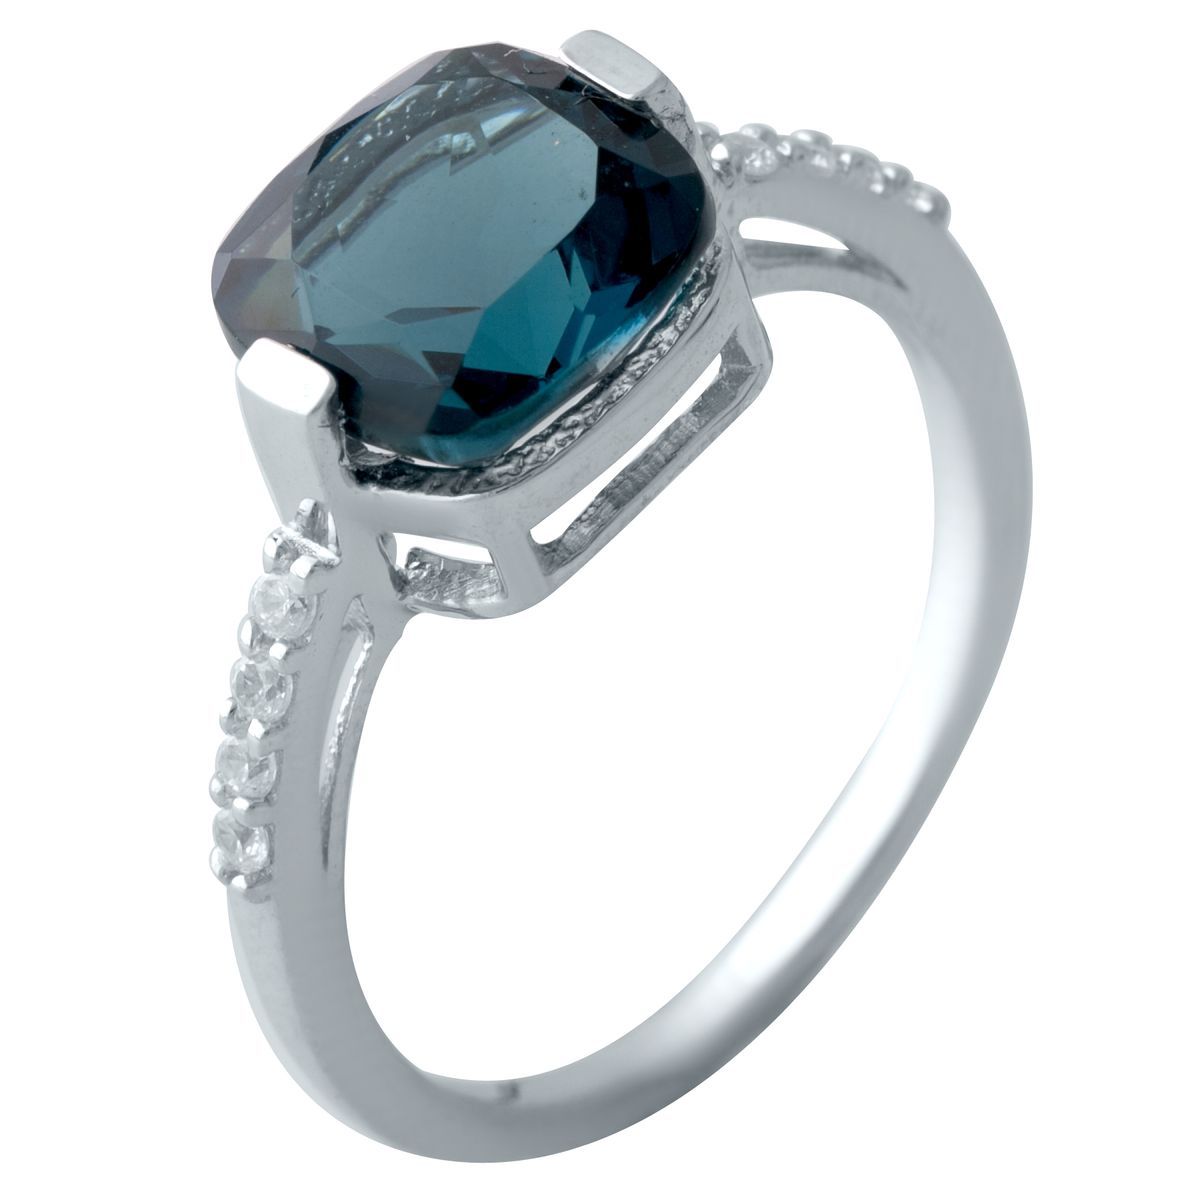 Серебряное кольцо SilverBreeze с натуральным топазом Лондон Блю 2.855ct 17 размер (2019848)